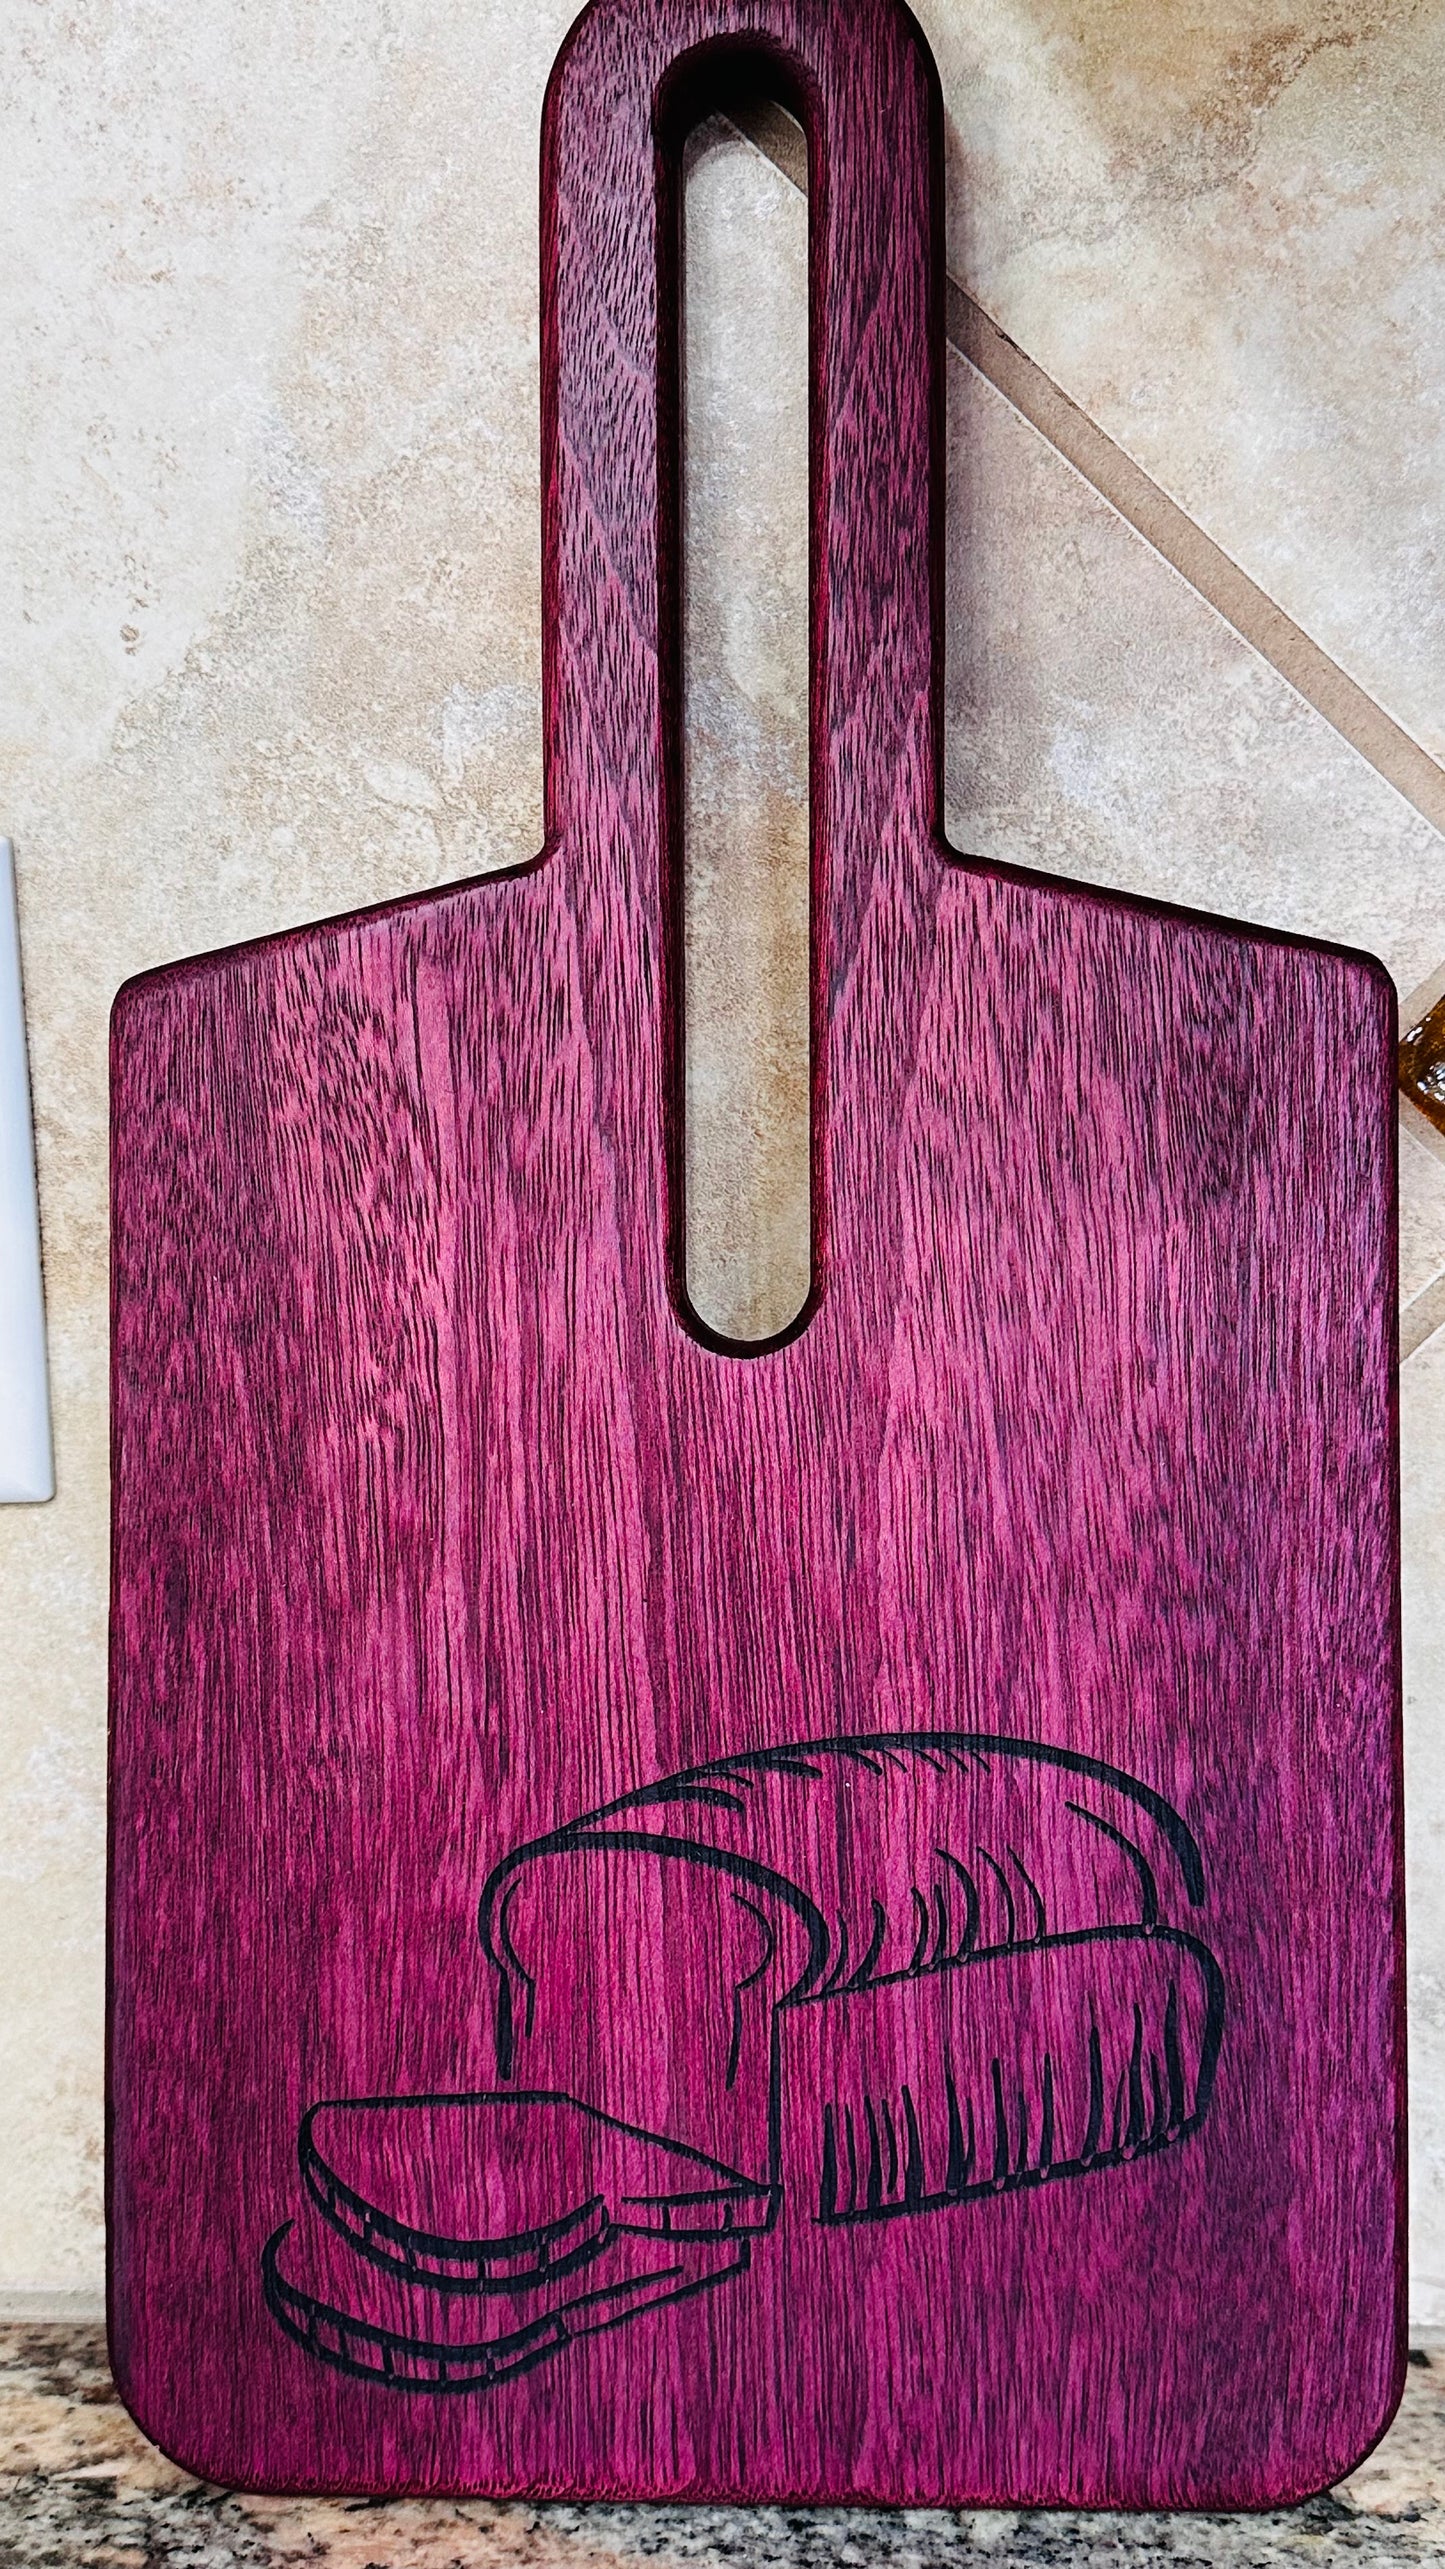 bread board purple heart